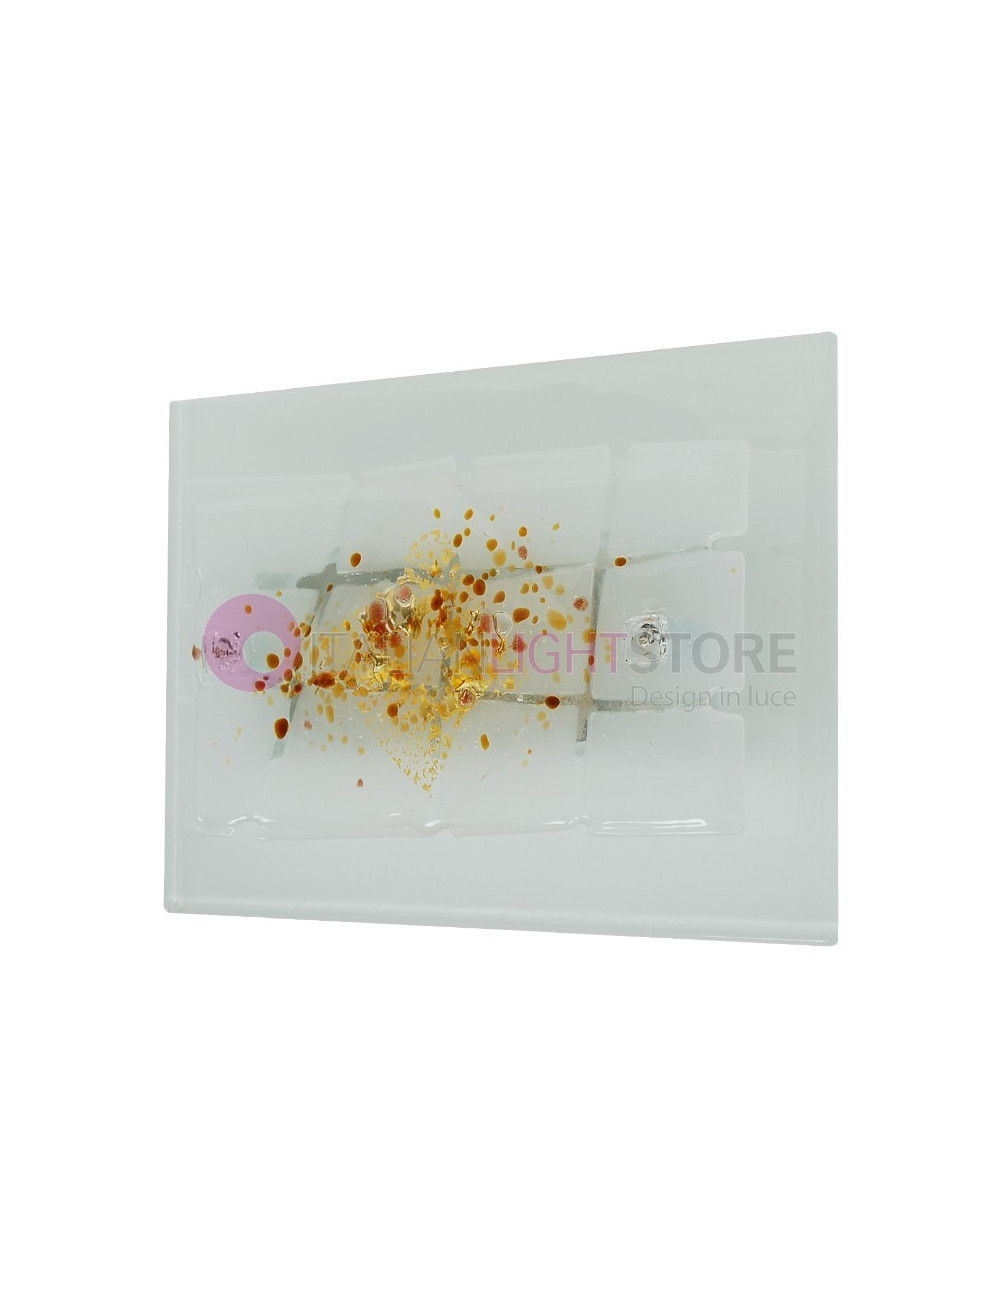 MIAMI GOLD FAMILAMP Applique in Murano glass 30x20